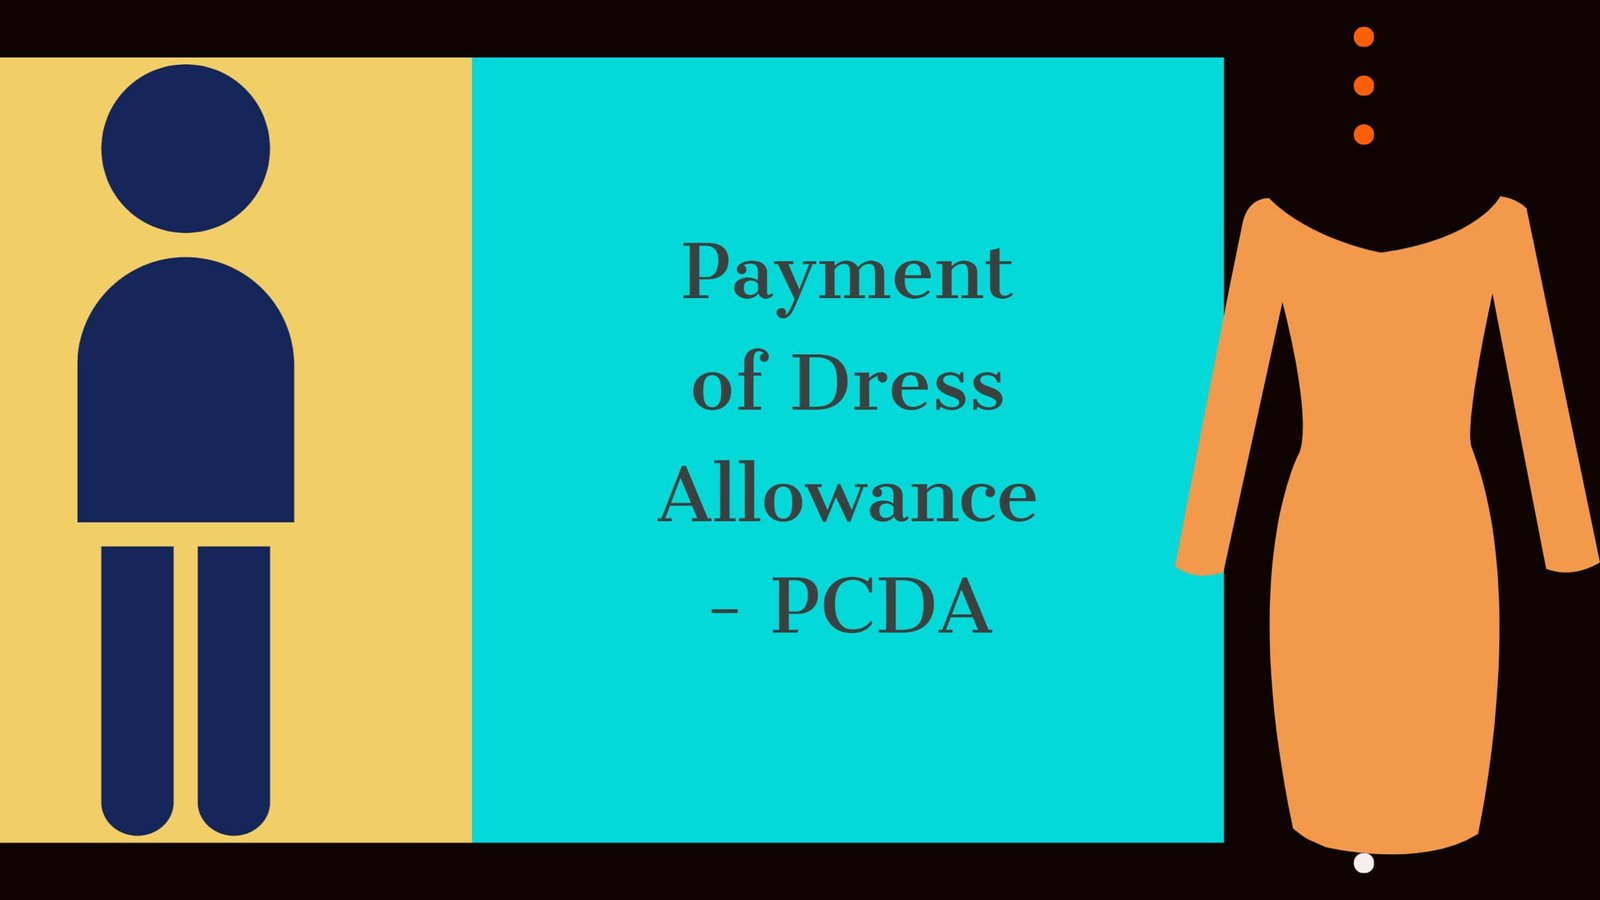 Payment of Dress Allowance - PCDA